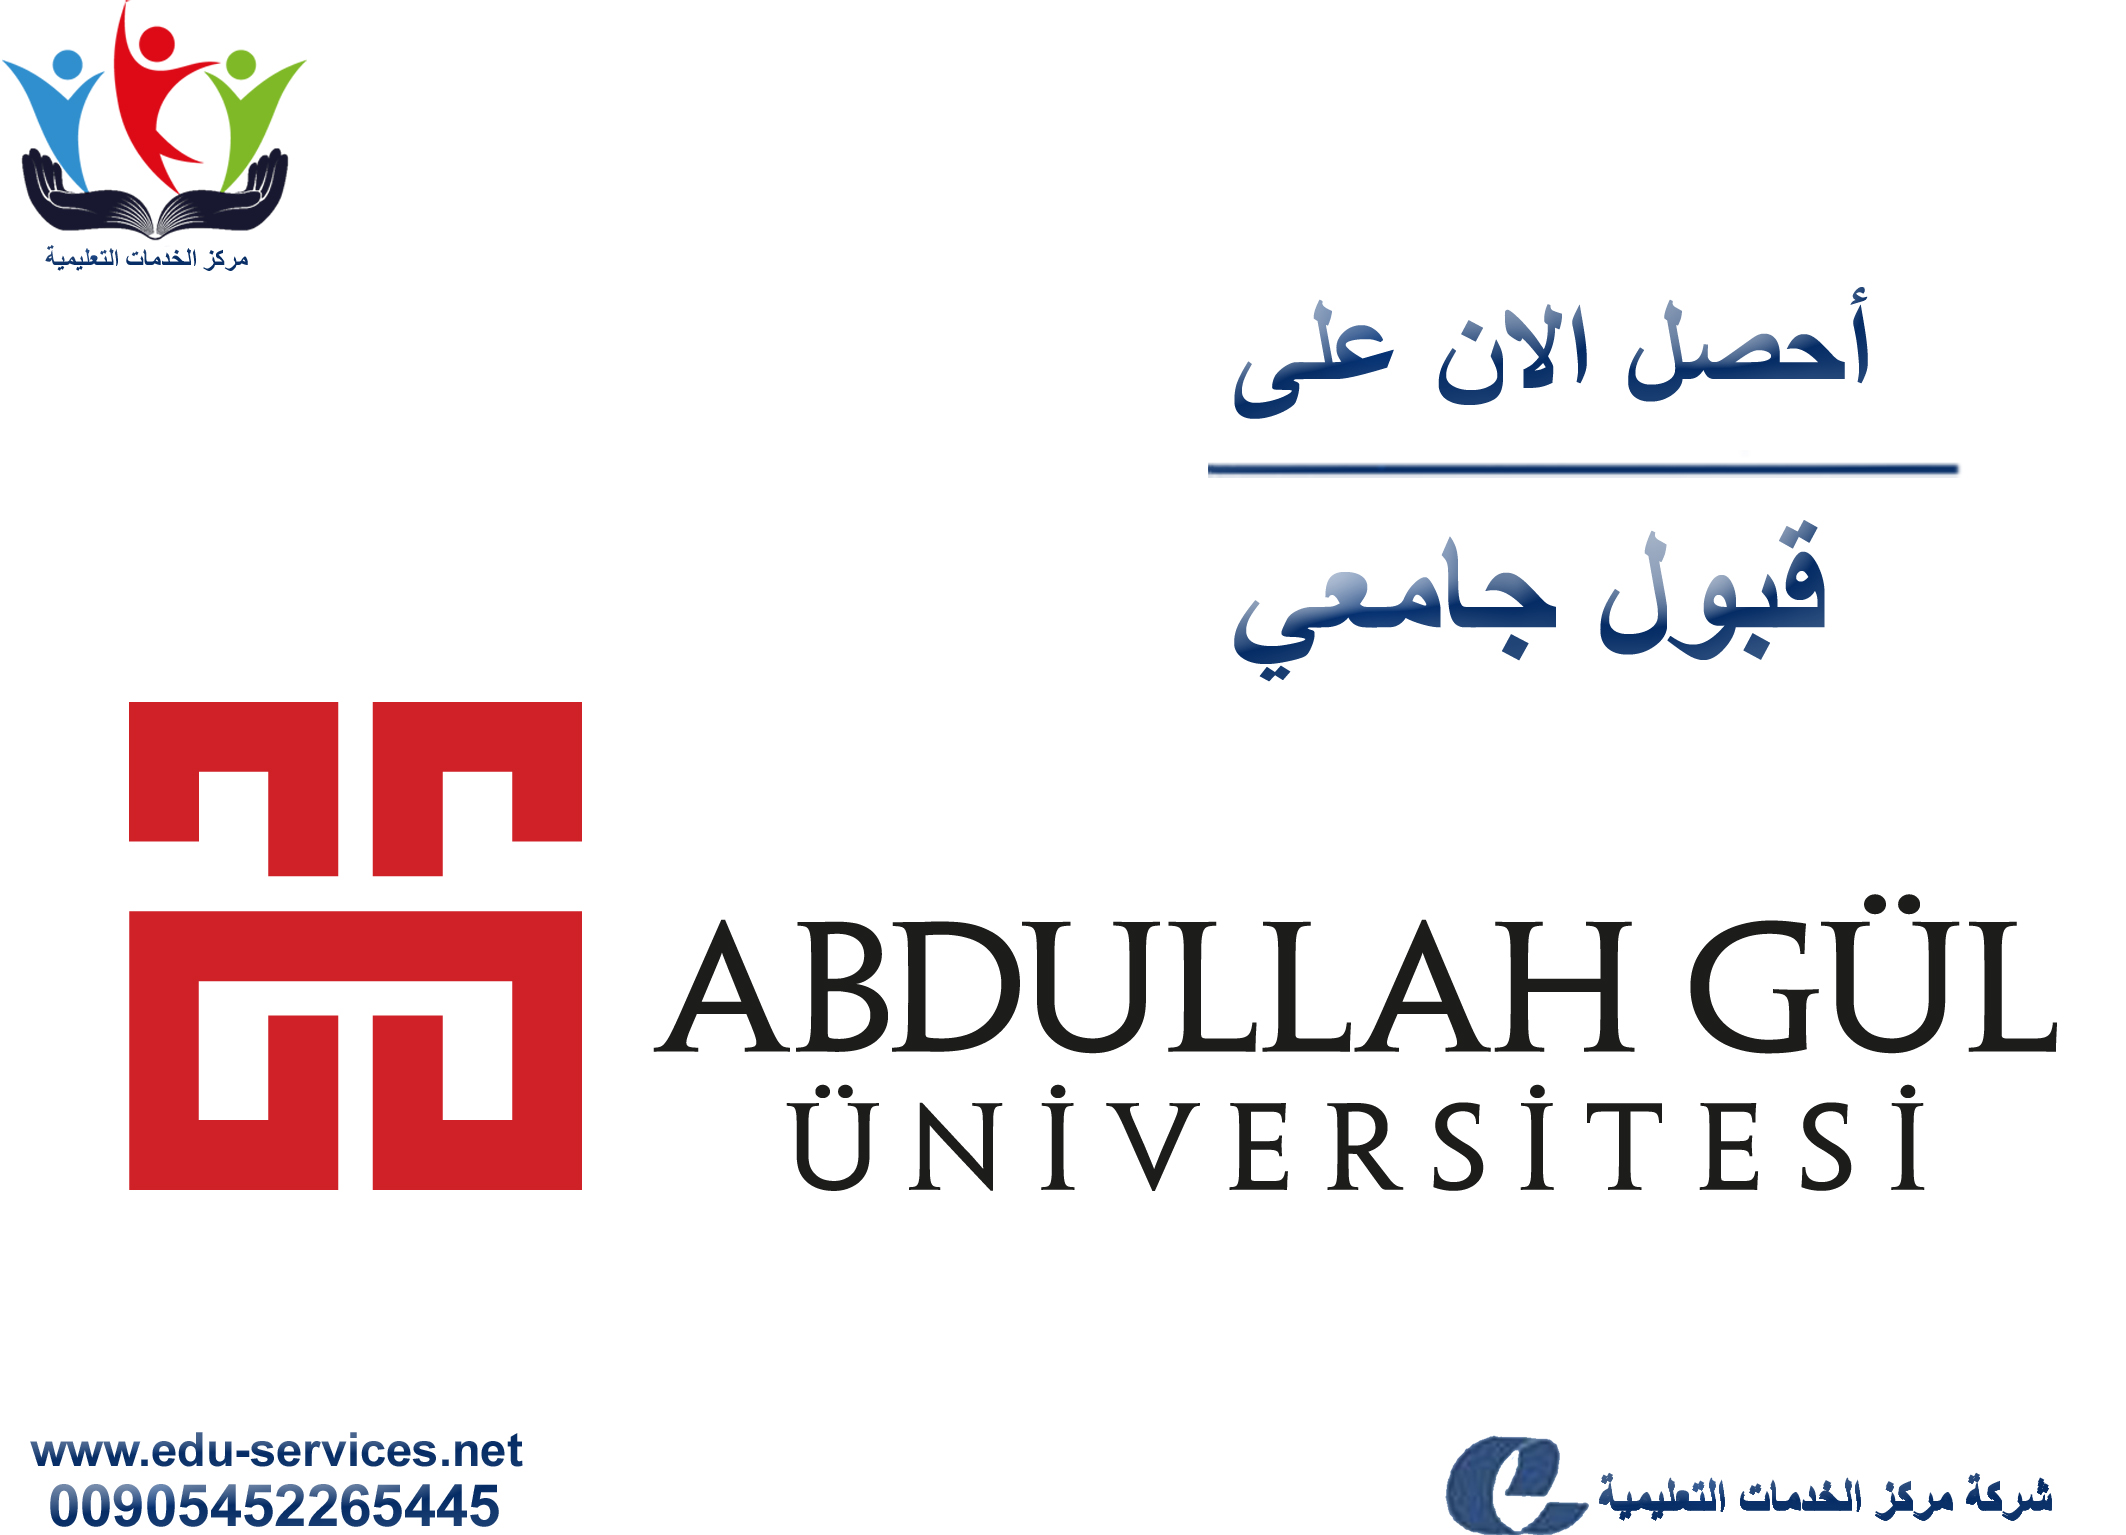 افتتاح التسجيل على جامعة عبدالله غل للدراسات العليا للفصل الدراسي الثاني 2019/2018